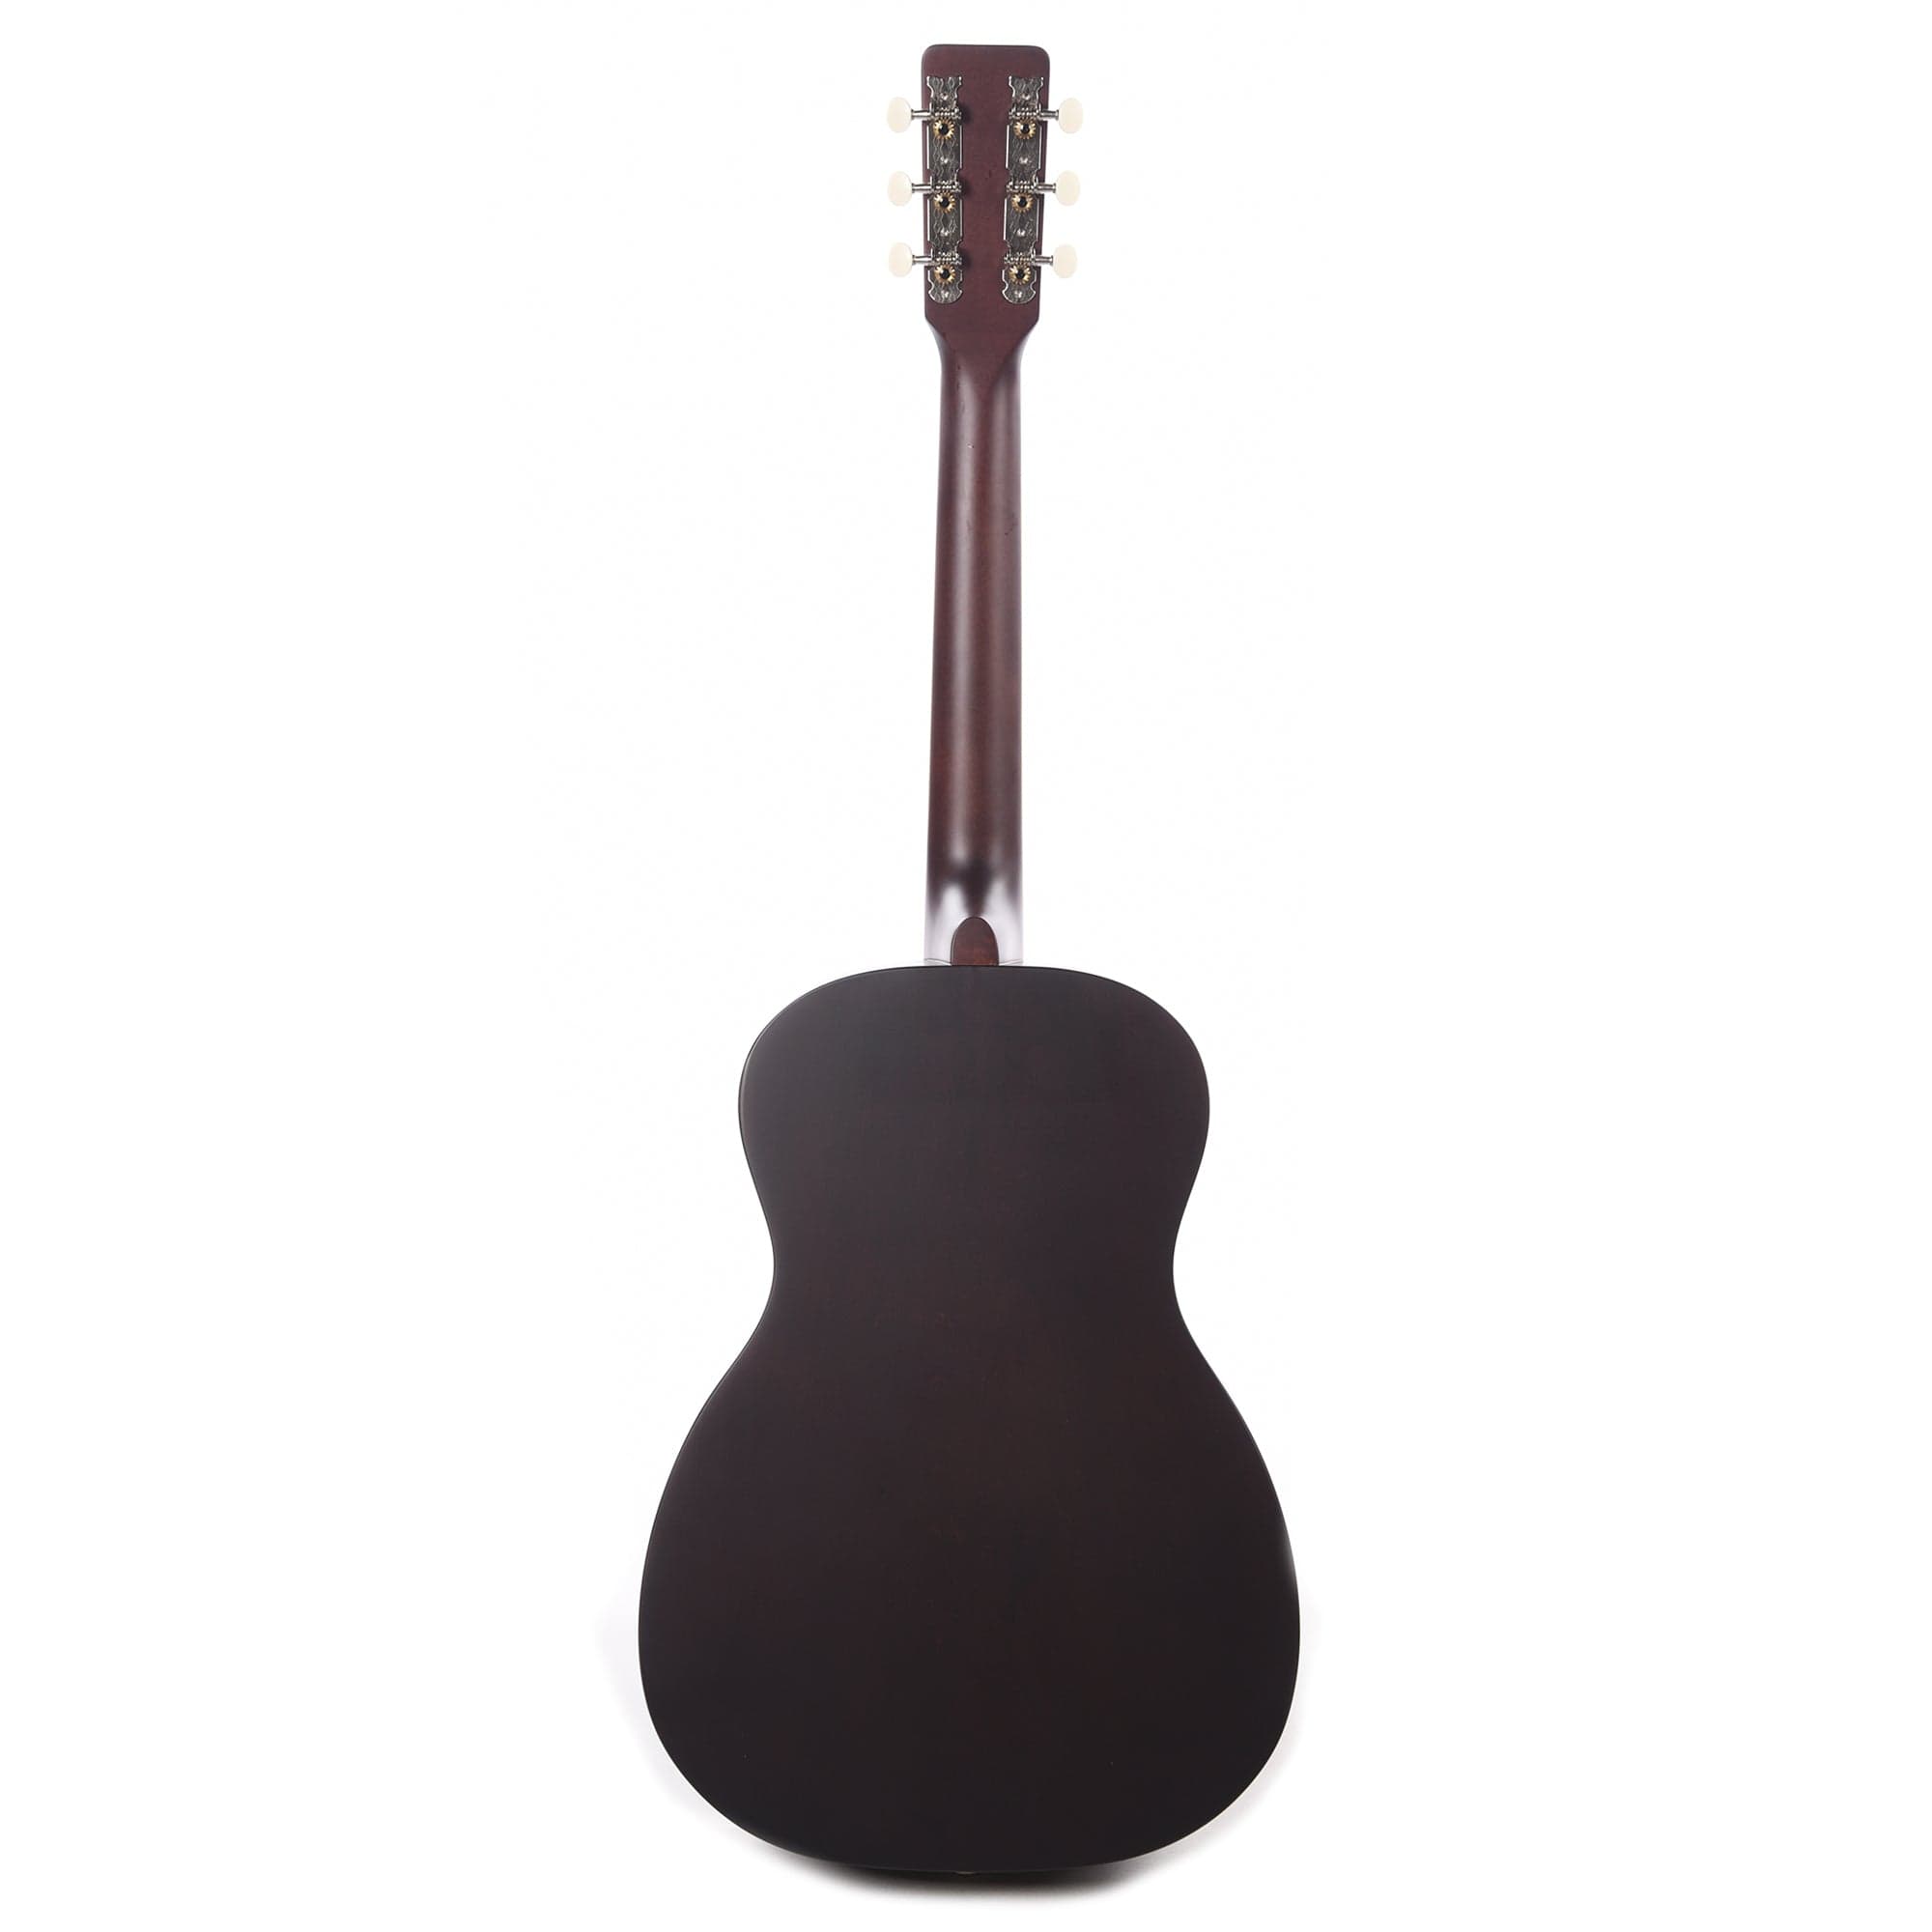 Gretsch Jim Dandy Parlor Acoustic Guitar Rex Burst Acoustic Guitars / Parlor